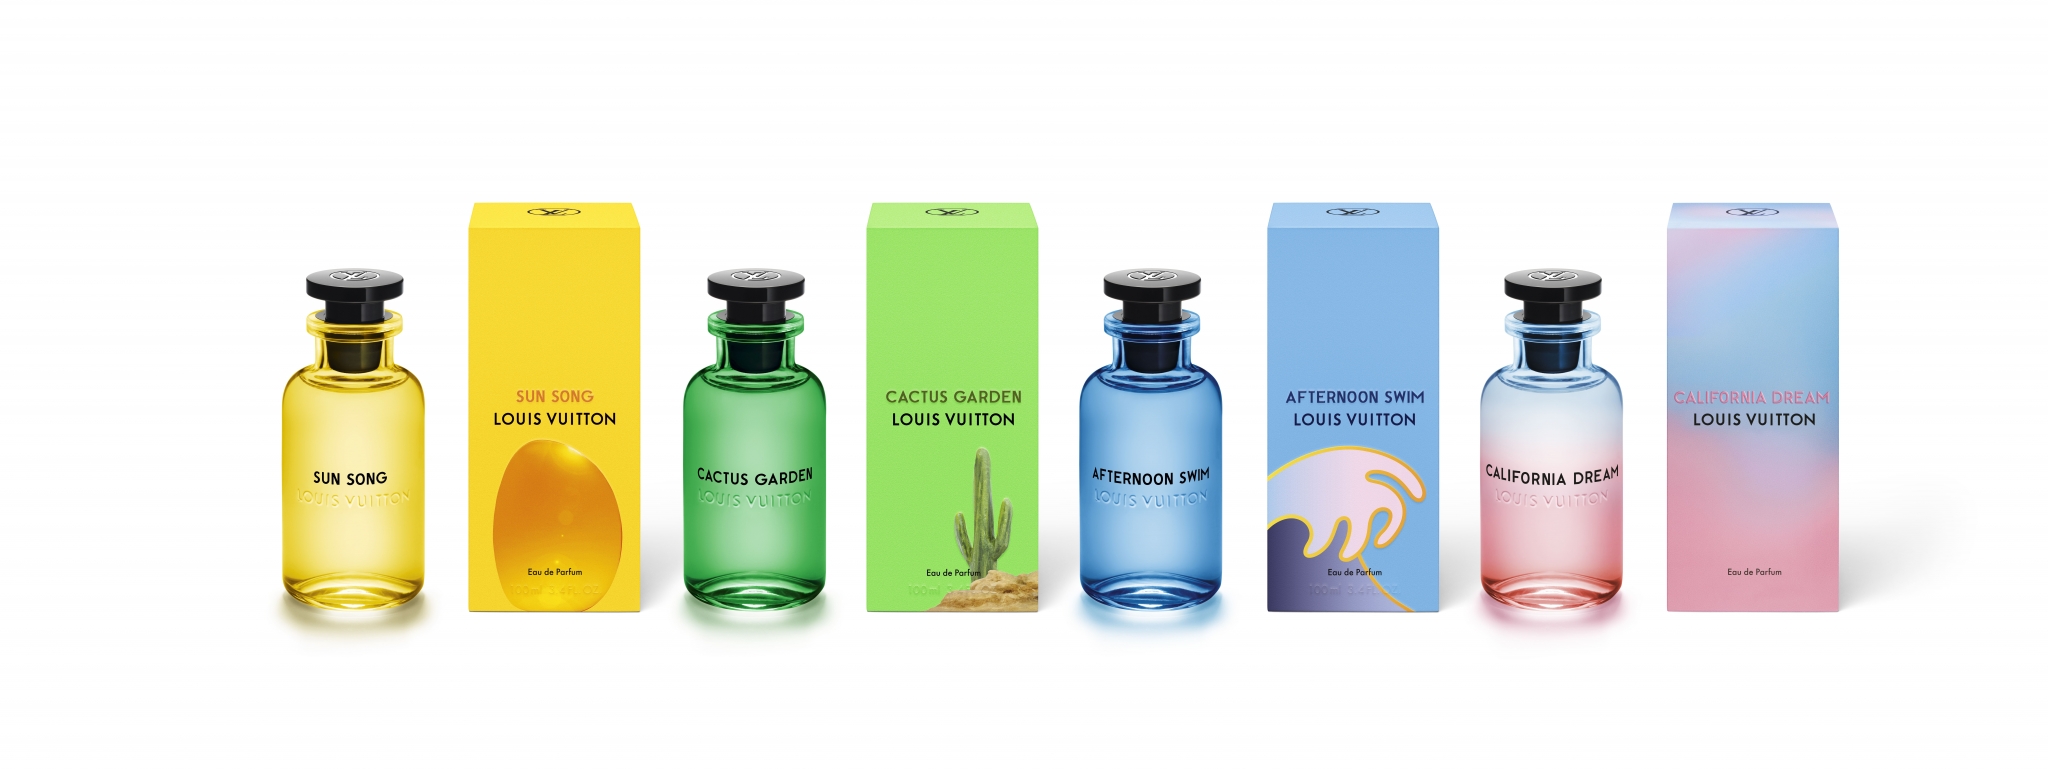 California Dream Louis Vuitton perfume - una nuevo fragancia para Hombres y Mujeres 2020